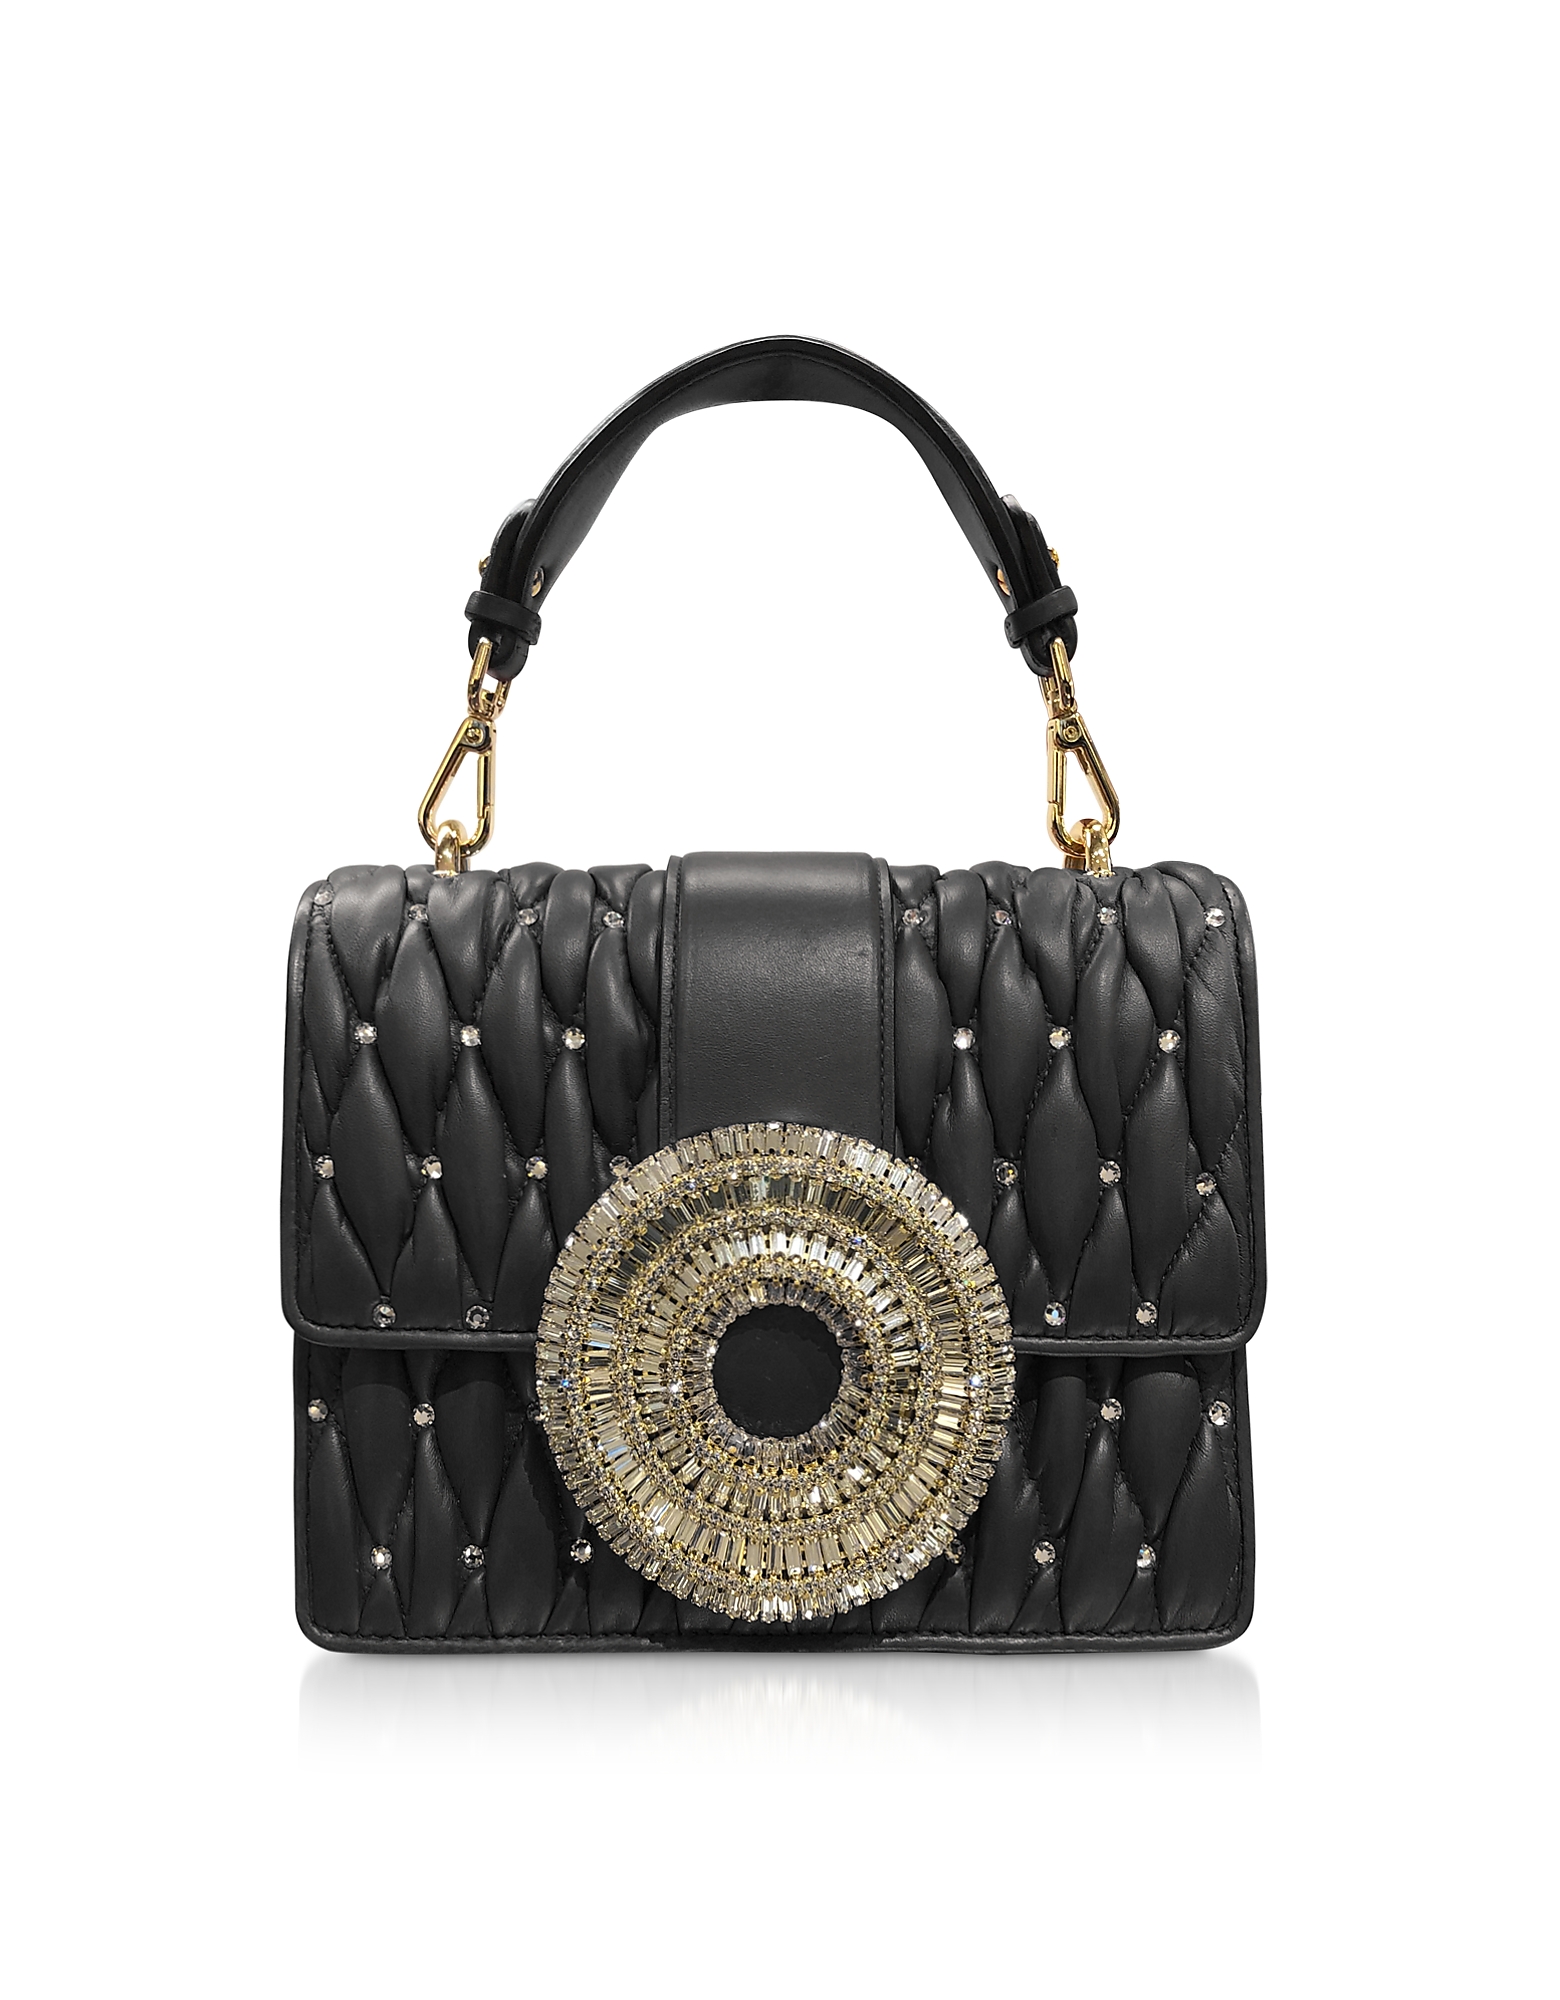 

Gio Black Nappa Leather & Crystal Handbag